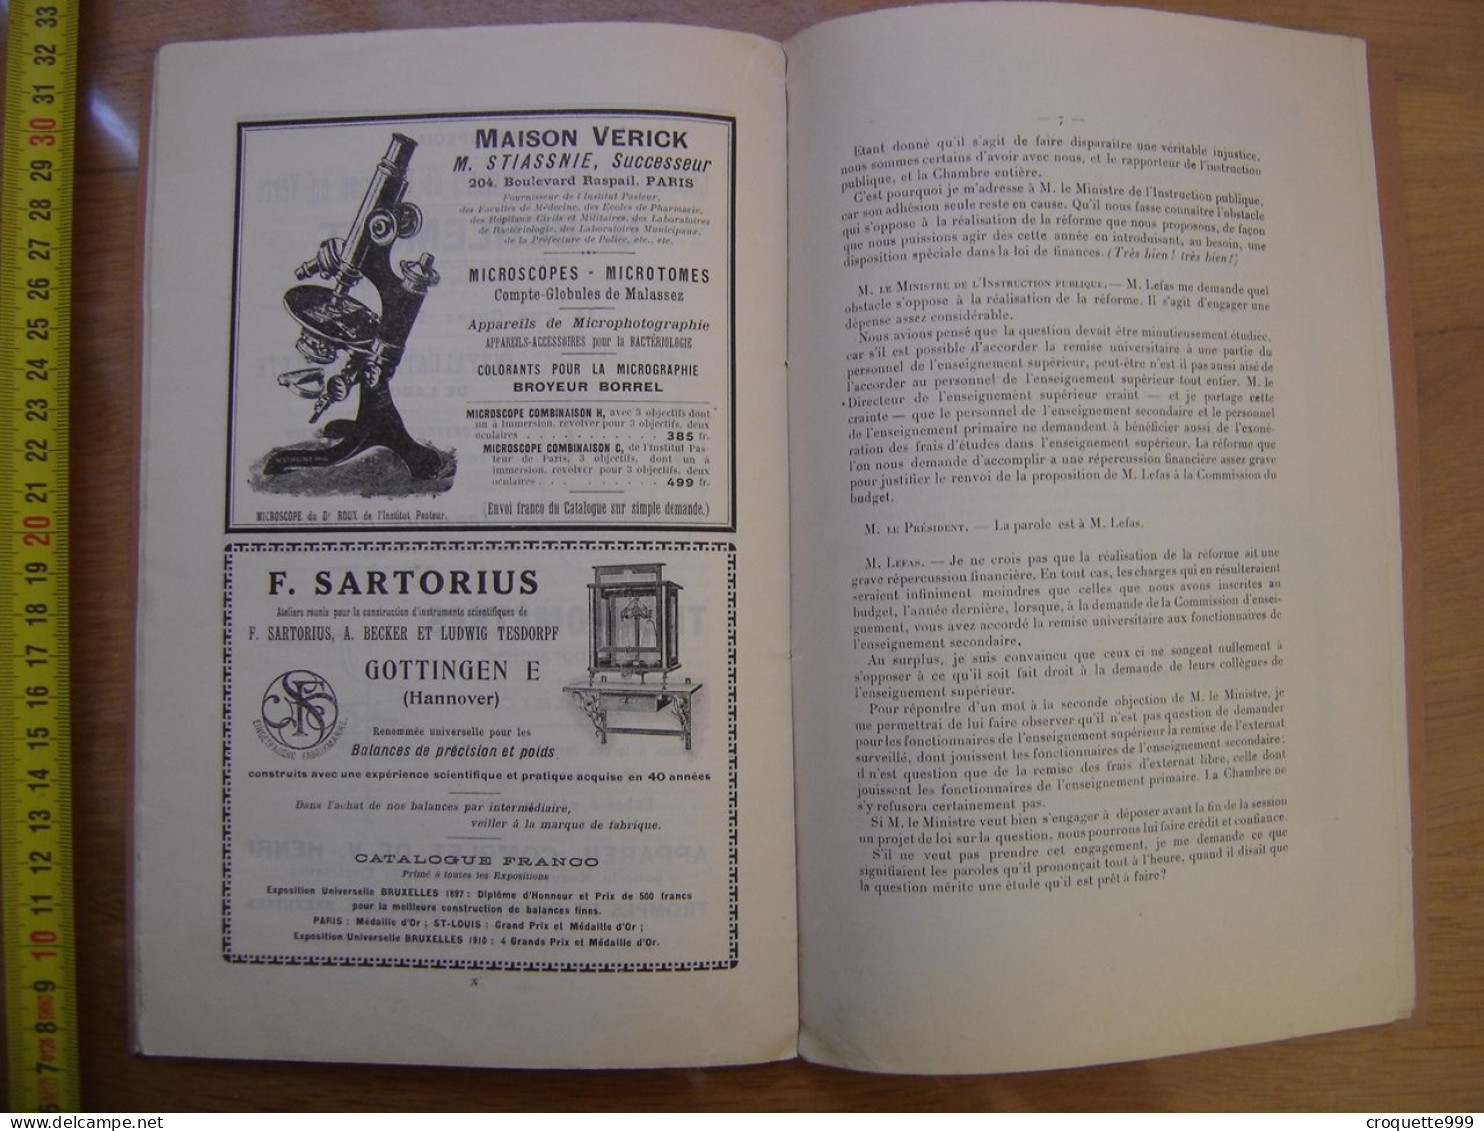 1911 Bulletin L'ECHO Des LABORATOIRES Publicites Jules Richard Microscope - Material Und Zubehör